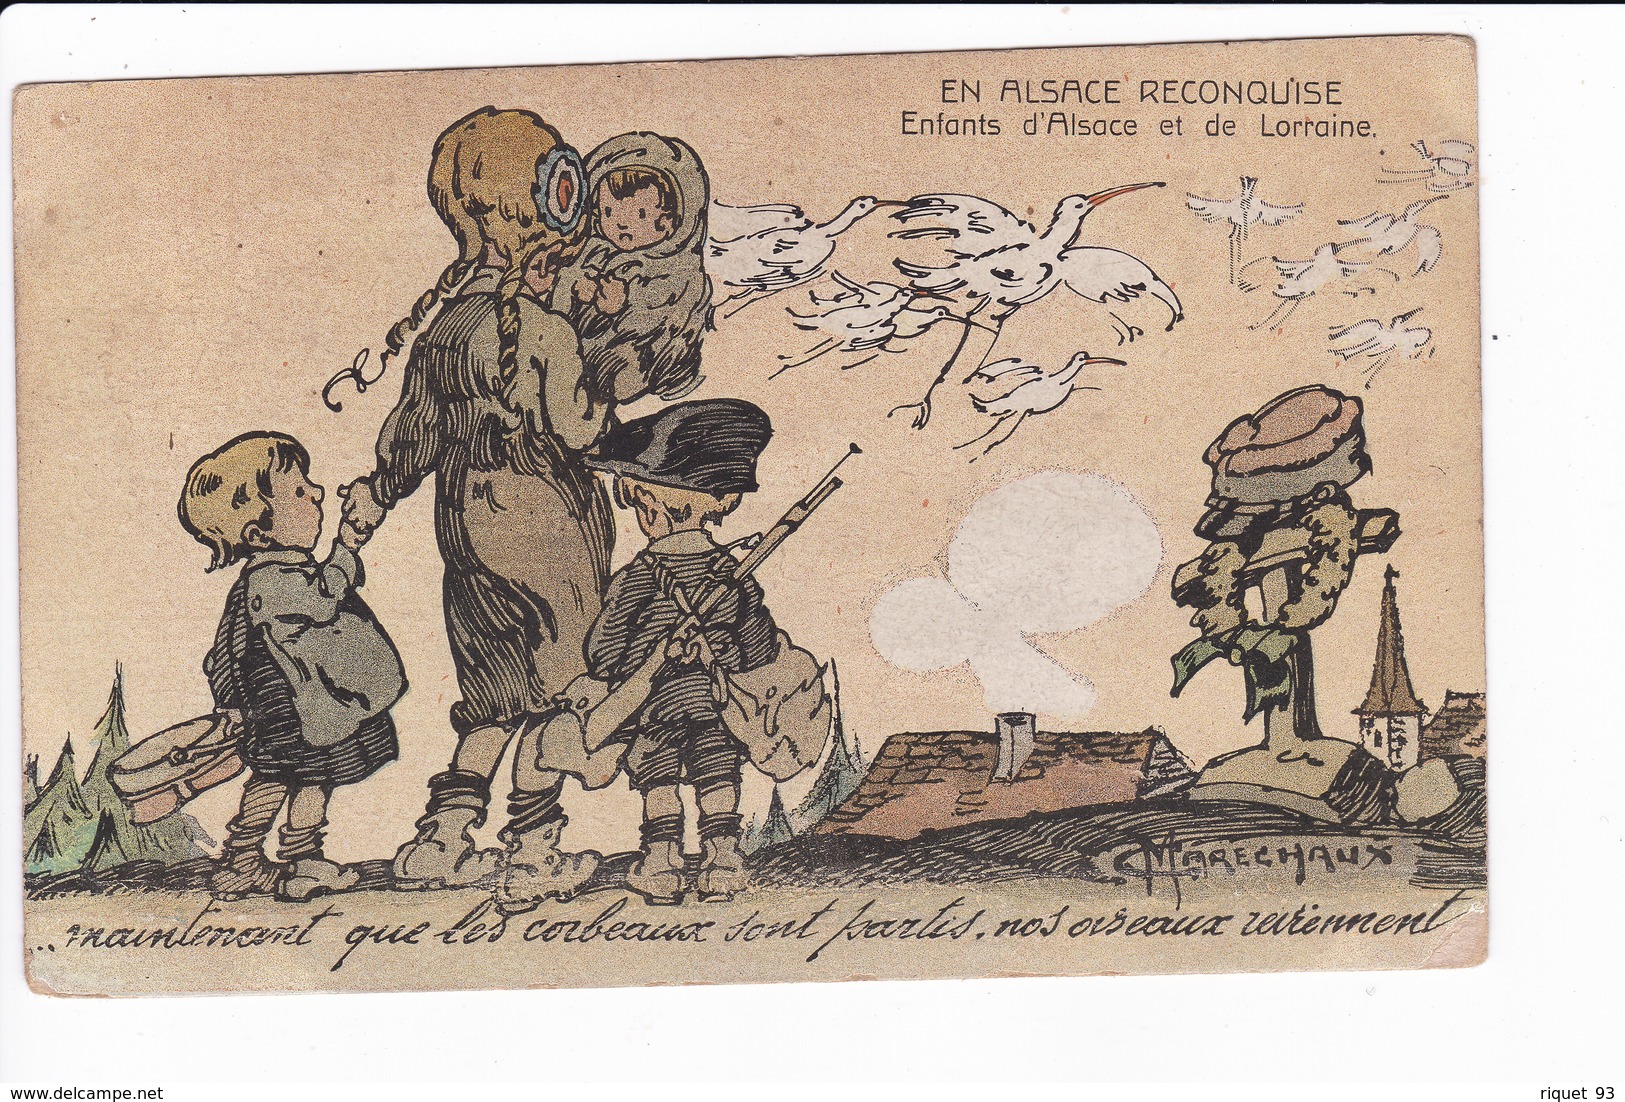 Lot 2 Cp-EN ALSACE RECONQUISE-Enfants D'Alsace Et De Lorraine. (dessin De C. Maréchaux) - Patriotic